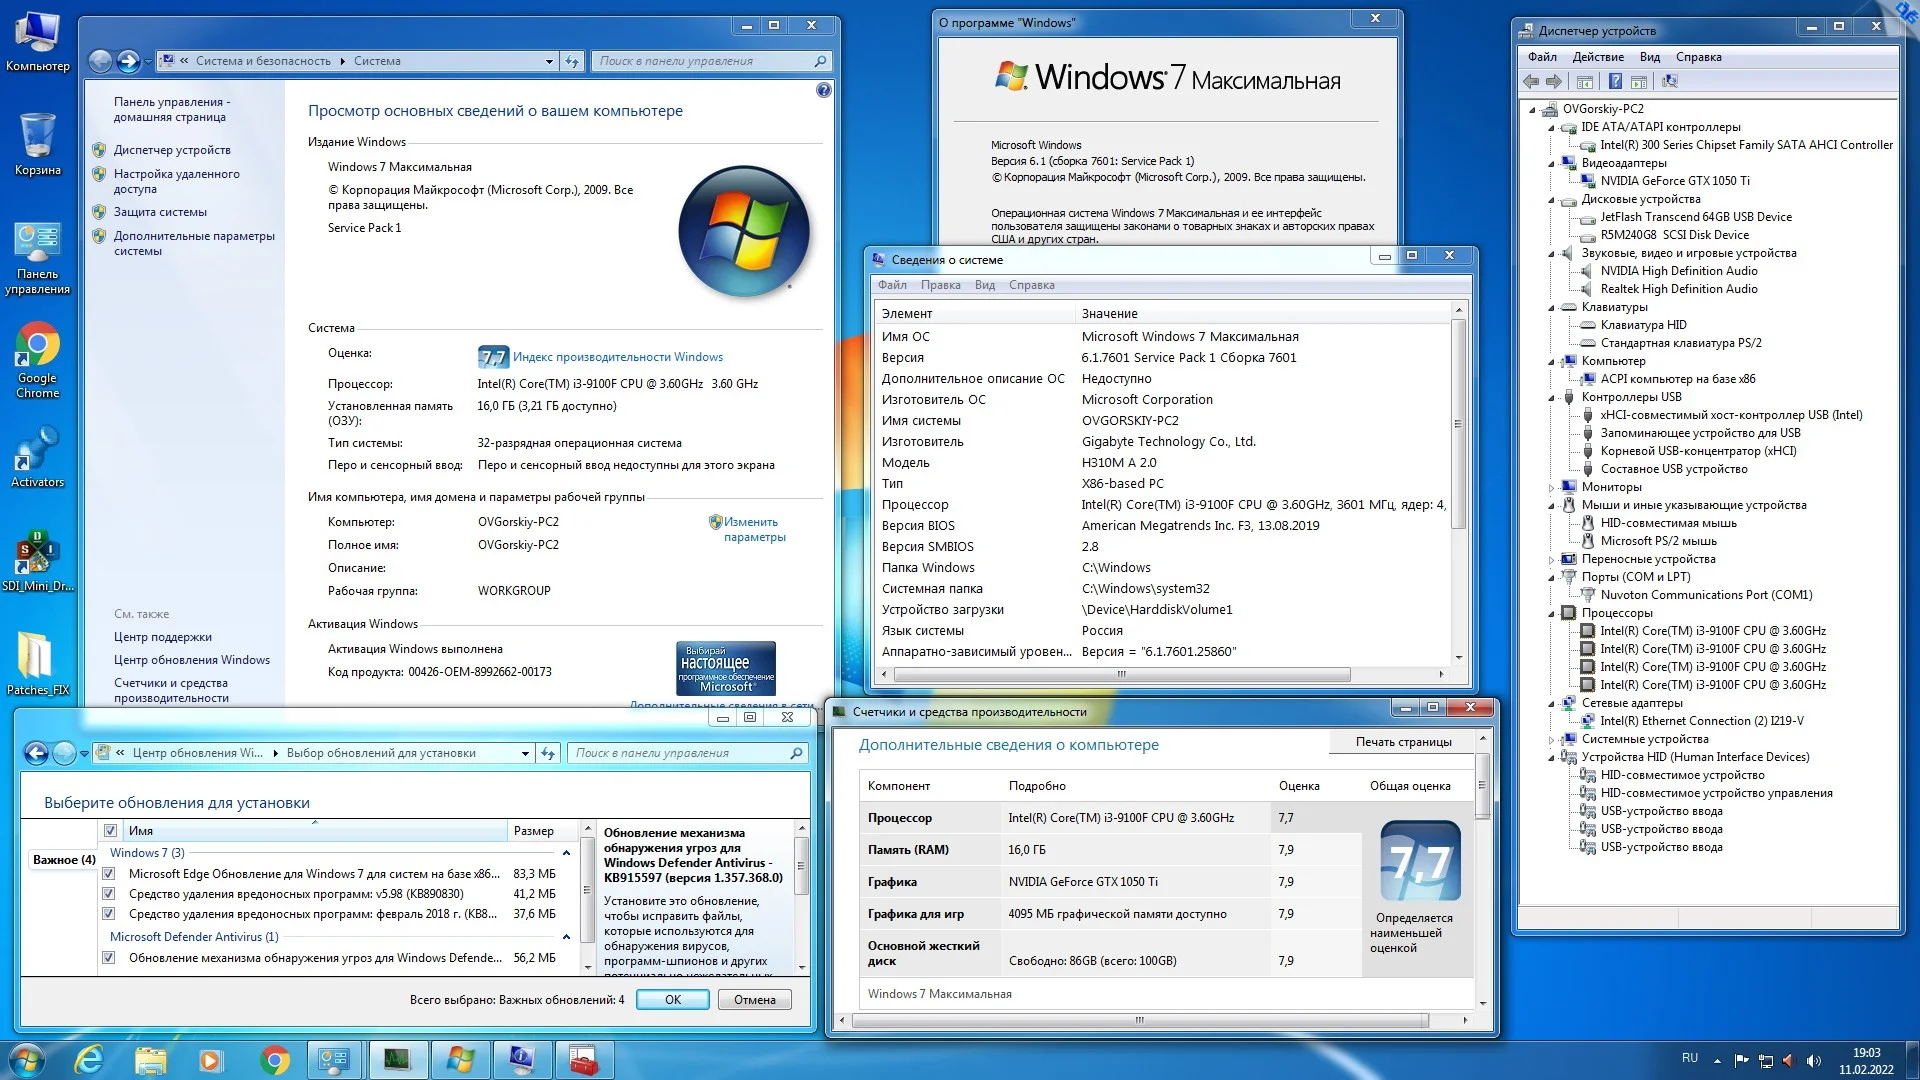 Windows® 7 Ultimate Ru x86 SP1 7DB by OVGorskiy 10.2022 1DVD